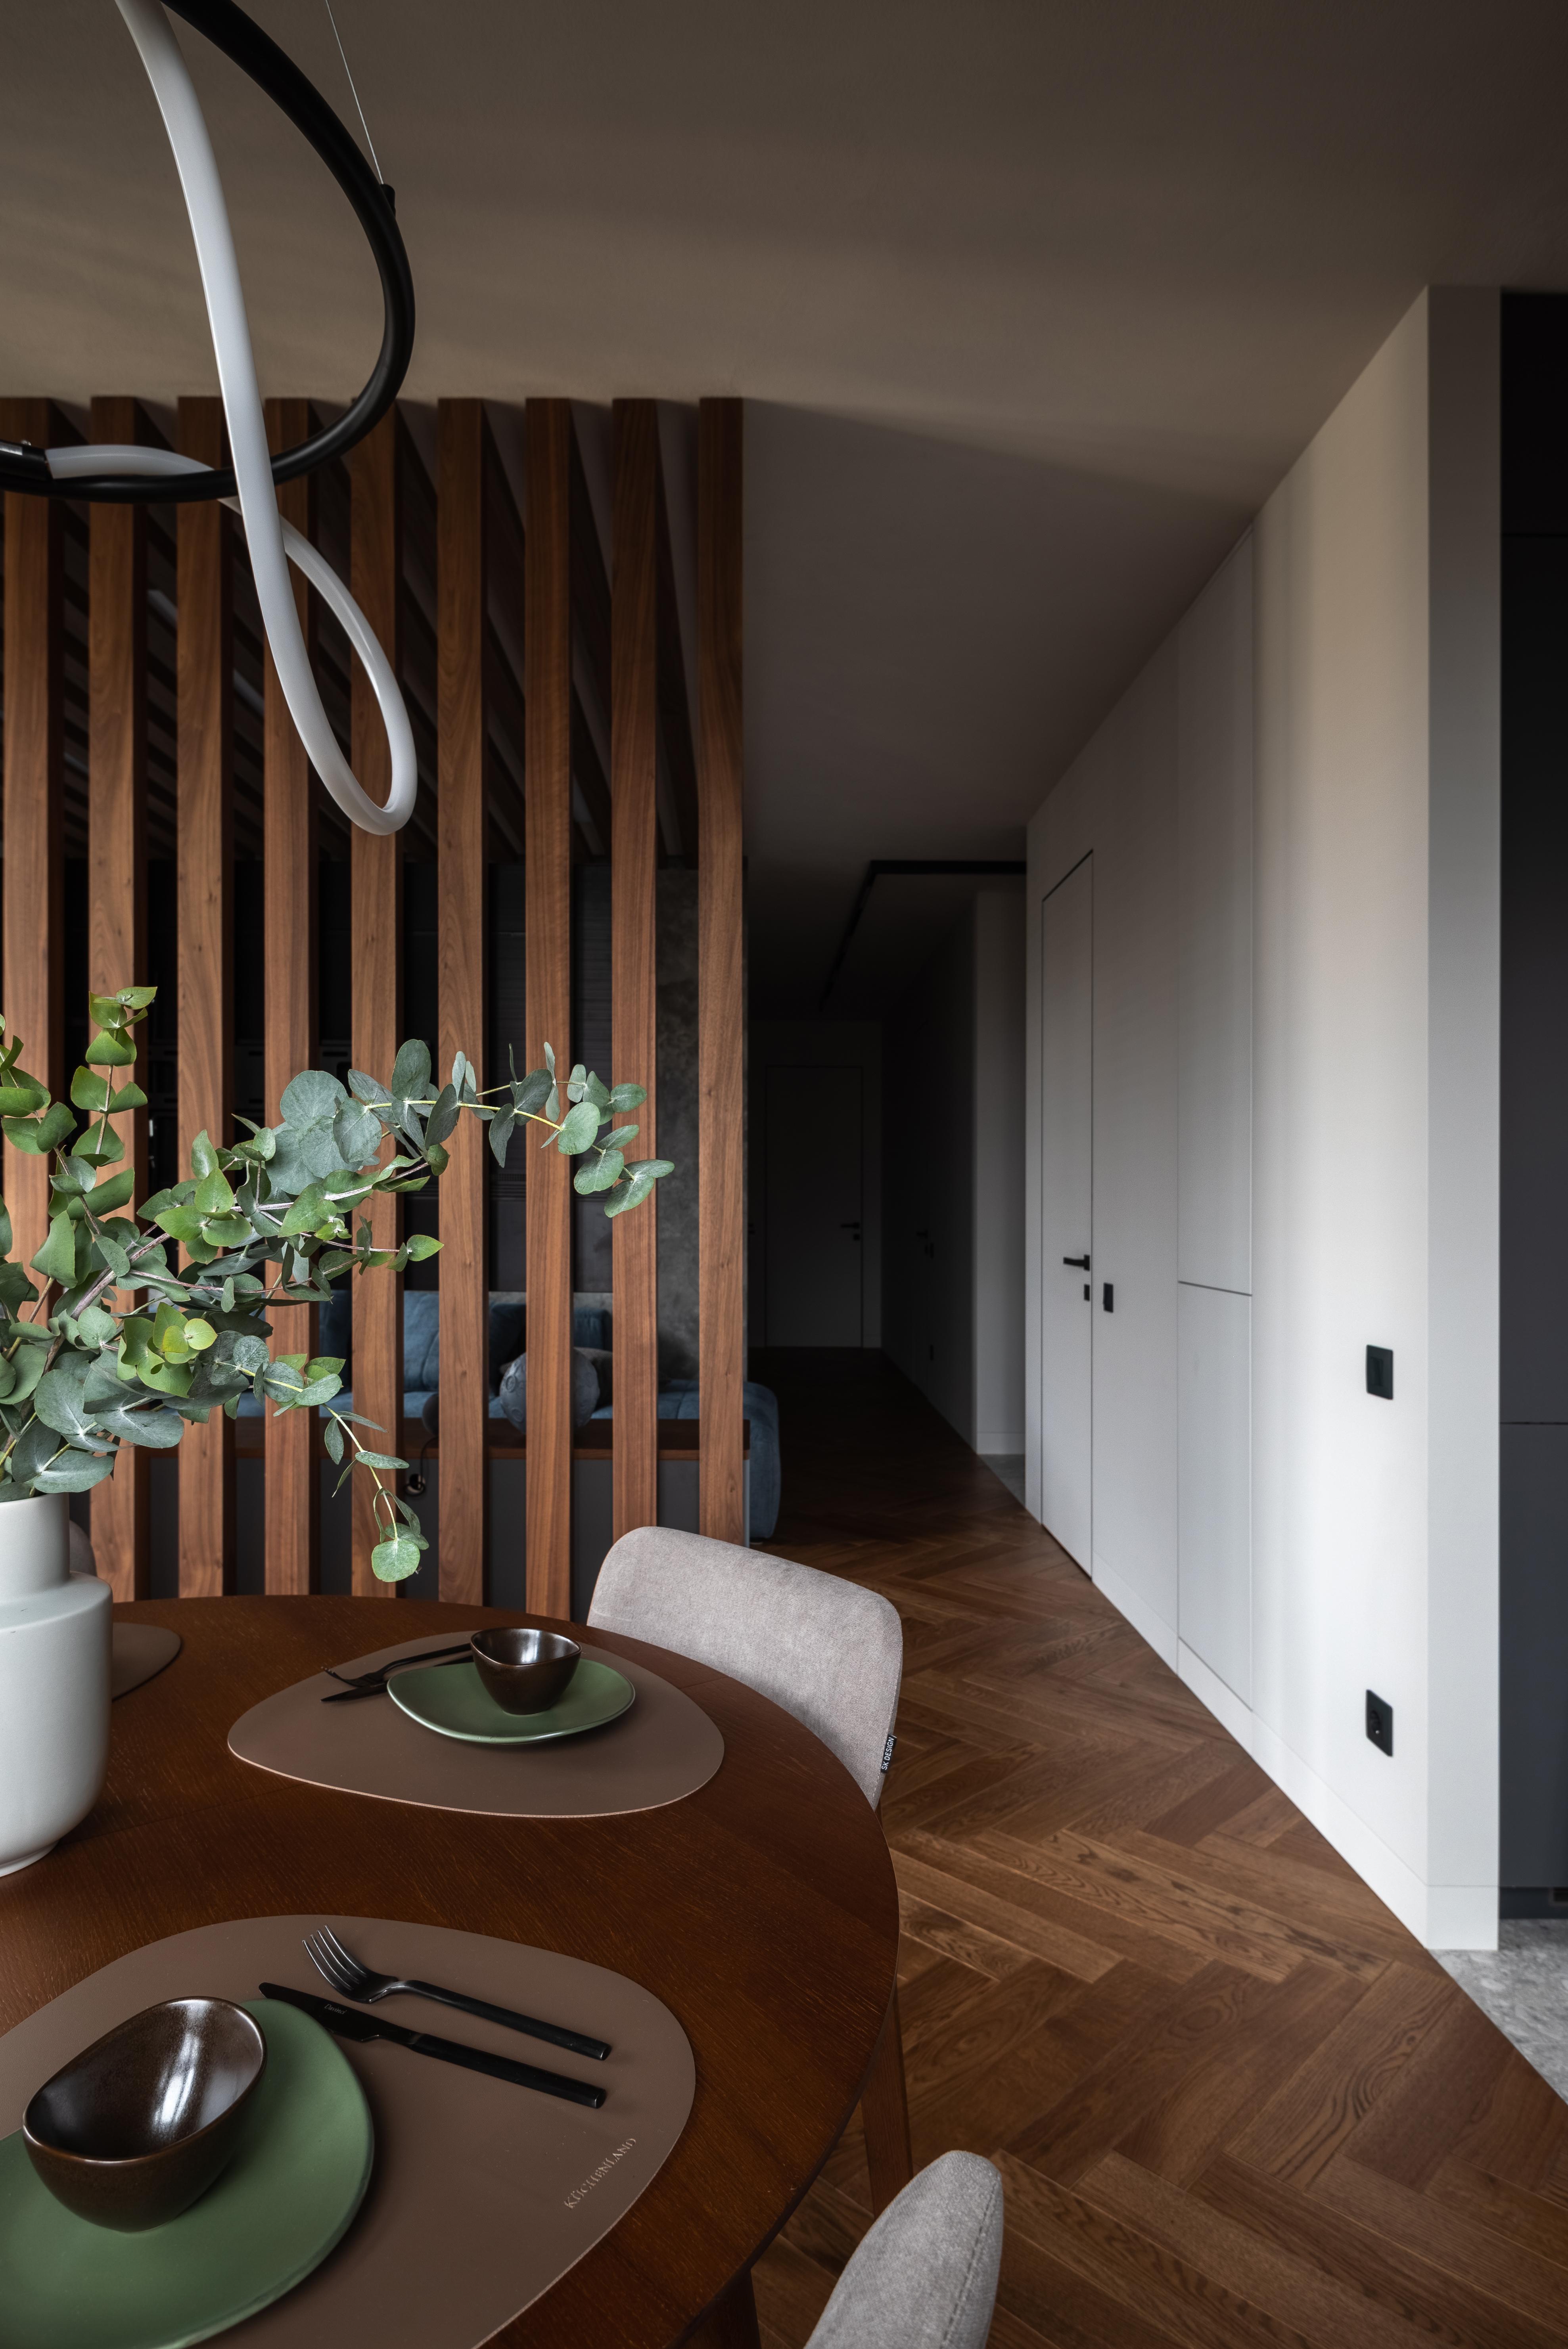 Интерьер с в деревянном доме, проходной, зонированием рейками, рейками с подсветкой и подсветкой настенной